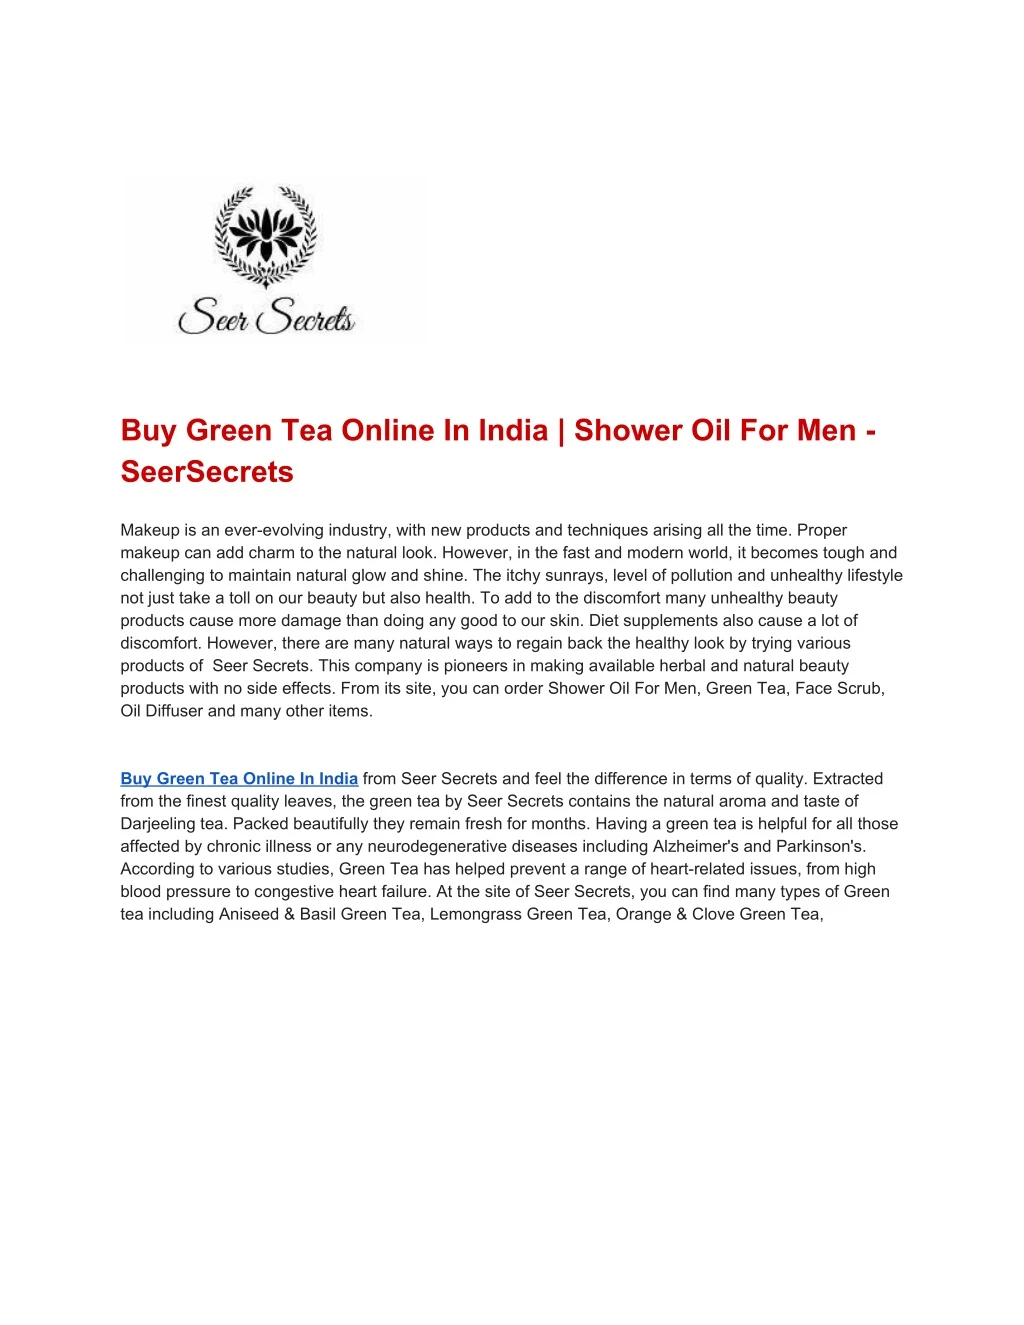 buy green tea online in india shower